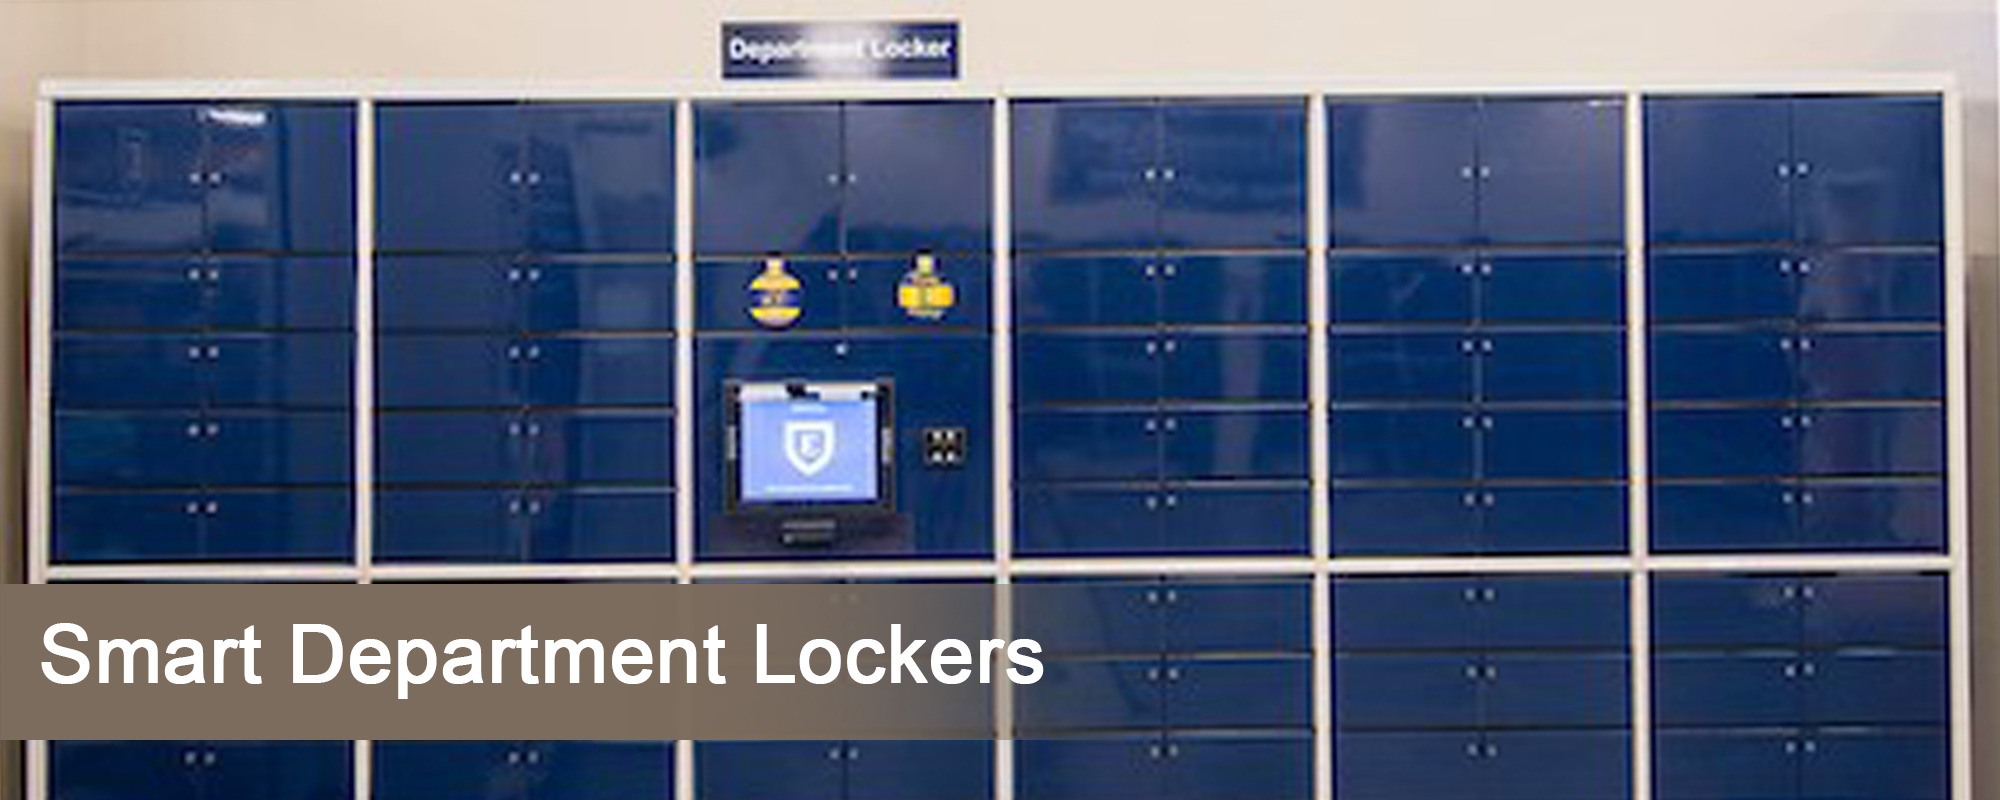 Smart department lockers